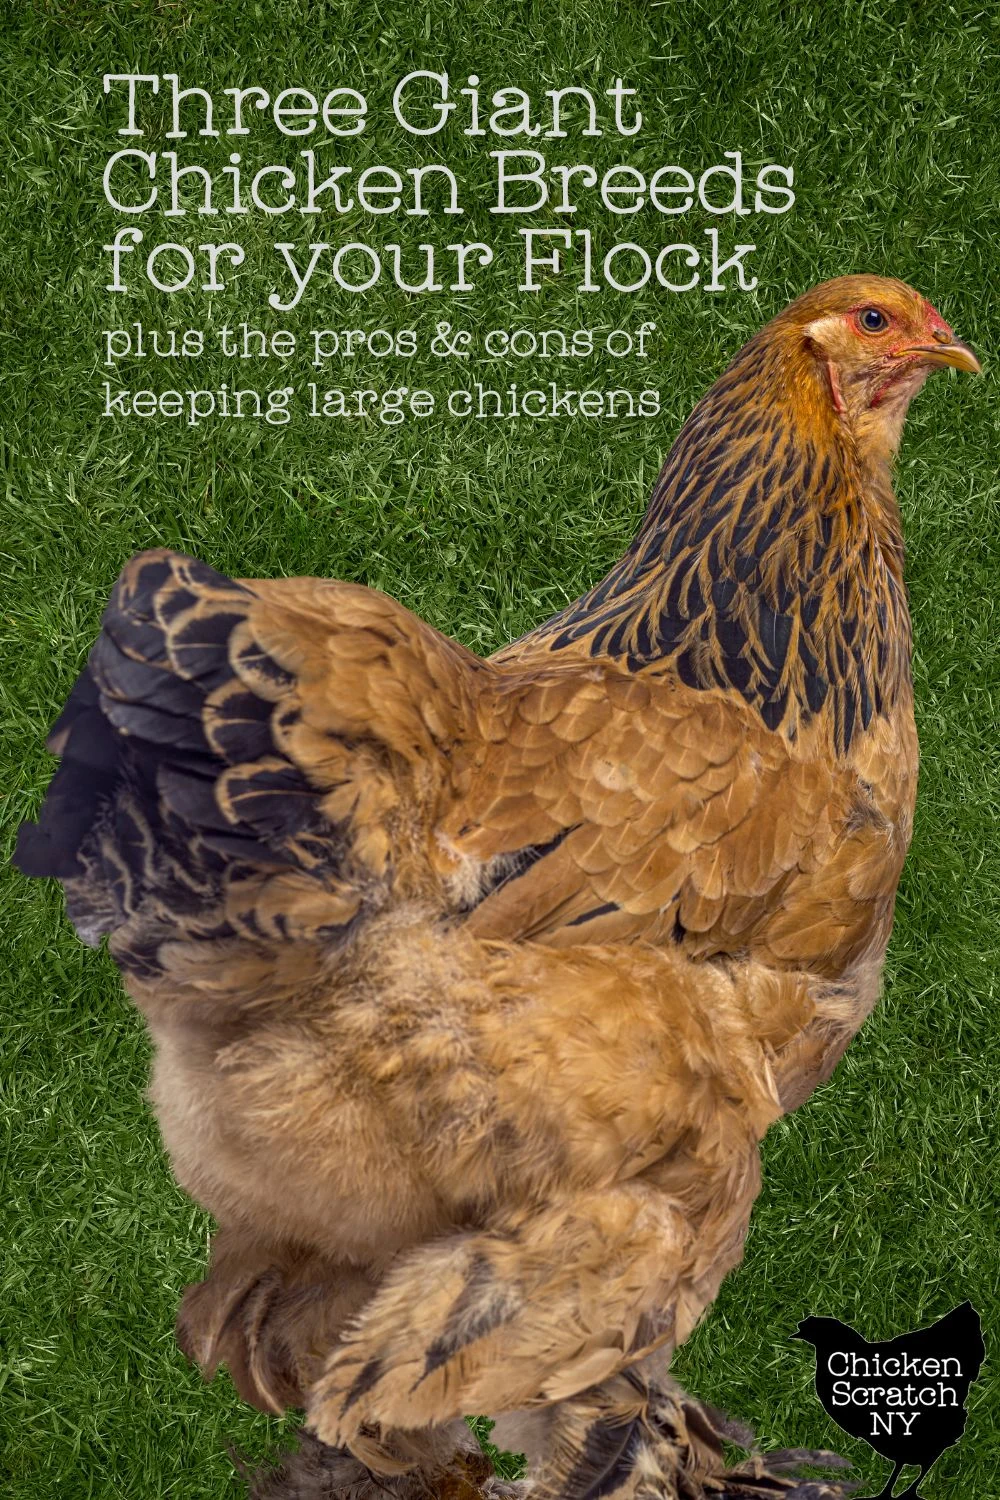 Gold Laced Brahma Chicken Breeding Pair - farm & garden - by owner